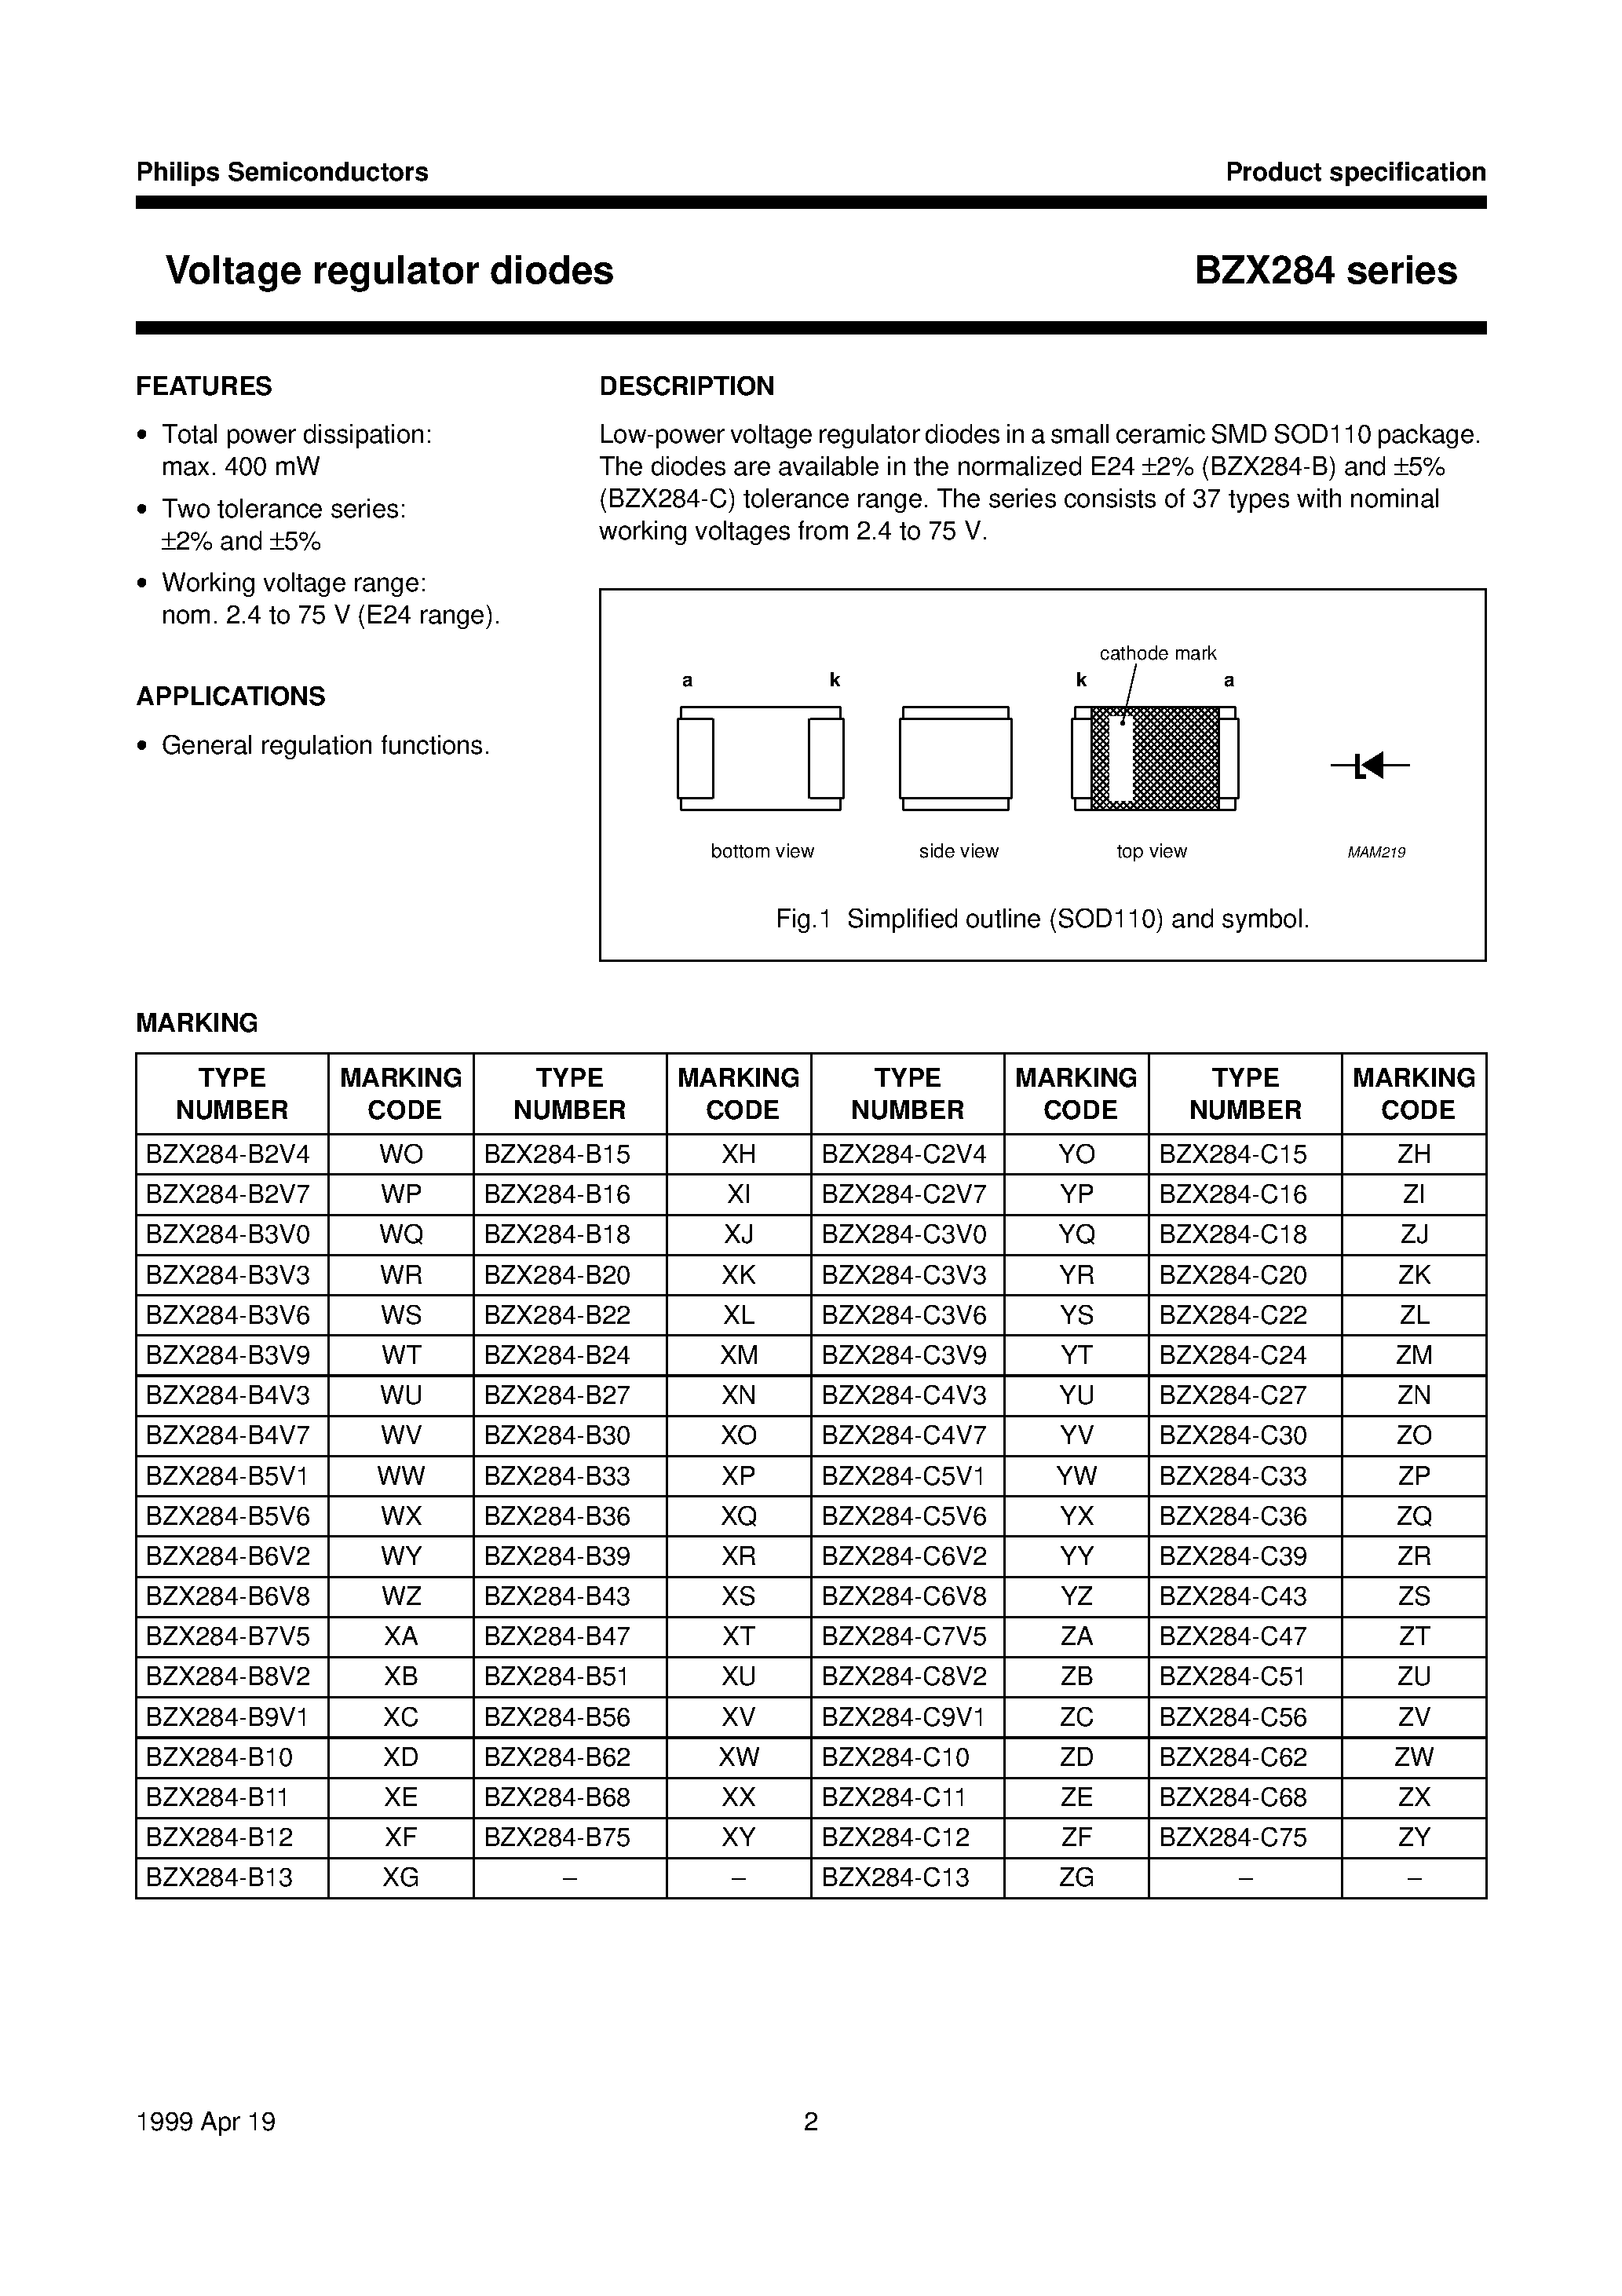 Datasheet BZX284-B75 - Voltage regulator diodes page 2